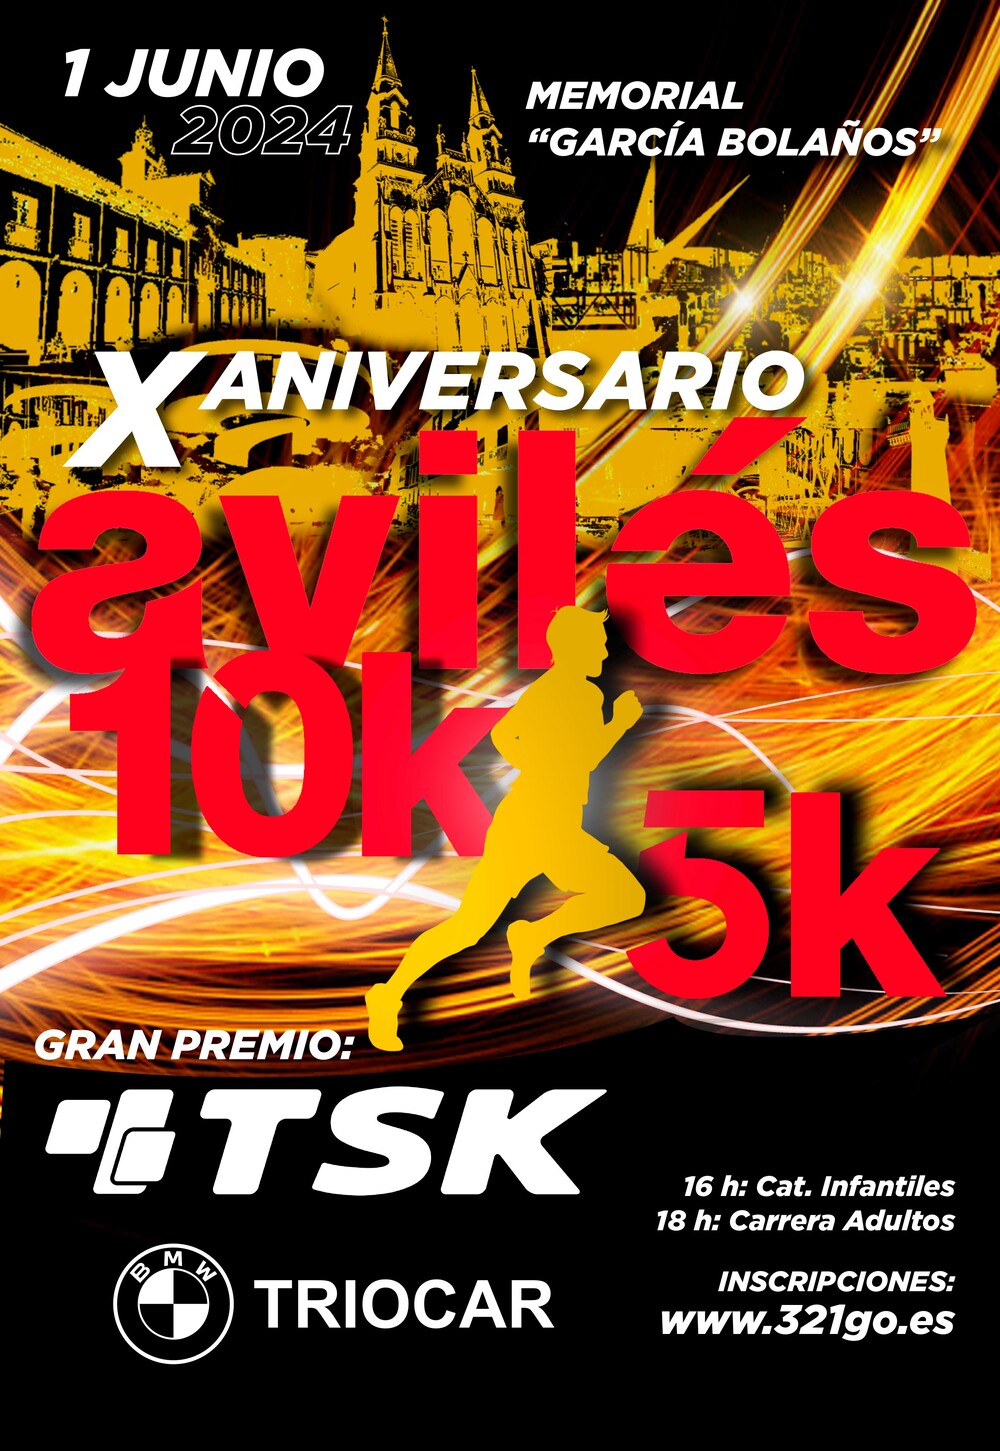 X Aniversario 10K AVILES Gran Premio TSK “Memorial García Bolaños”